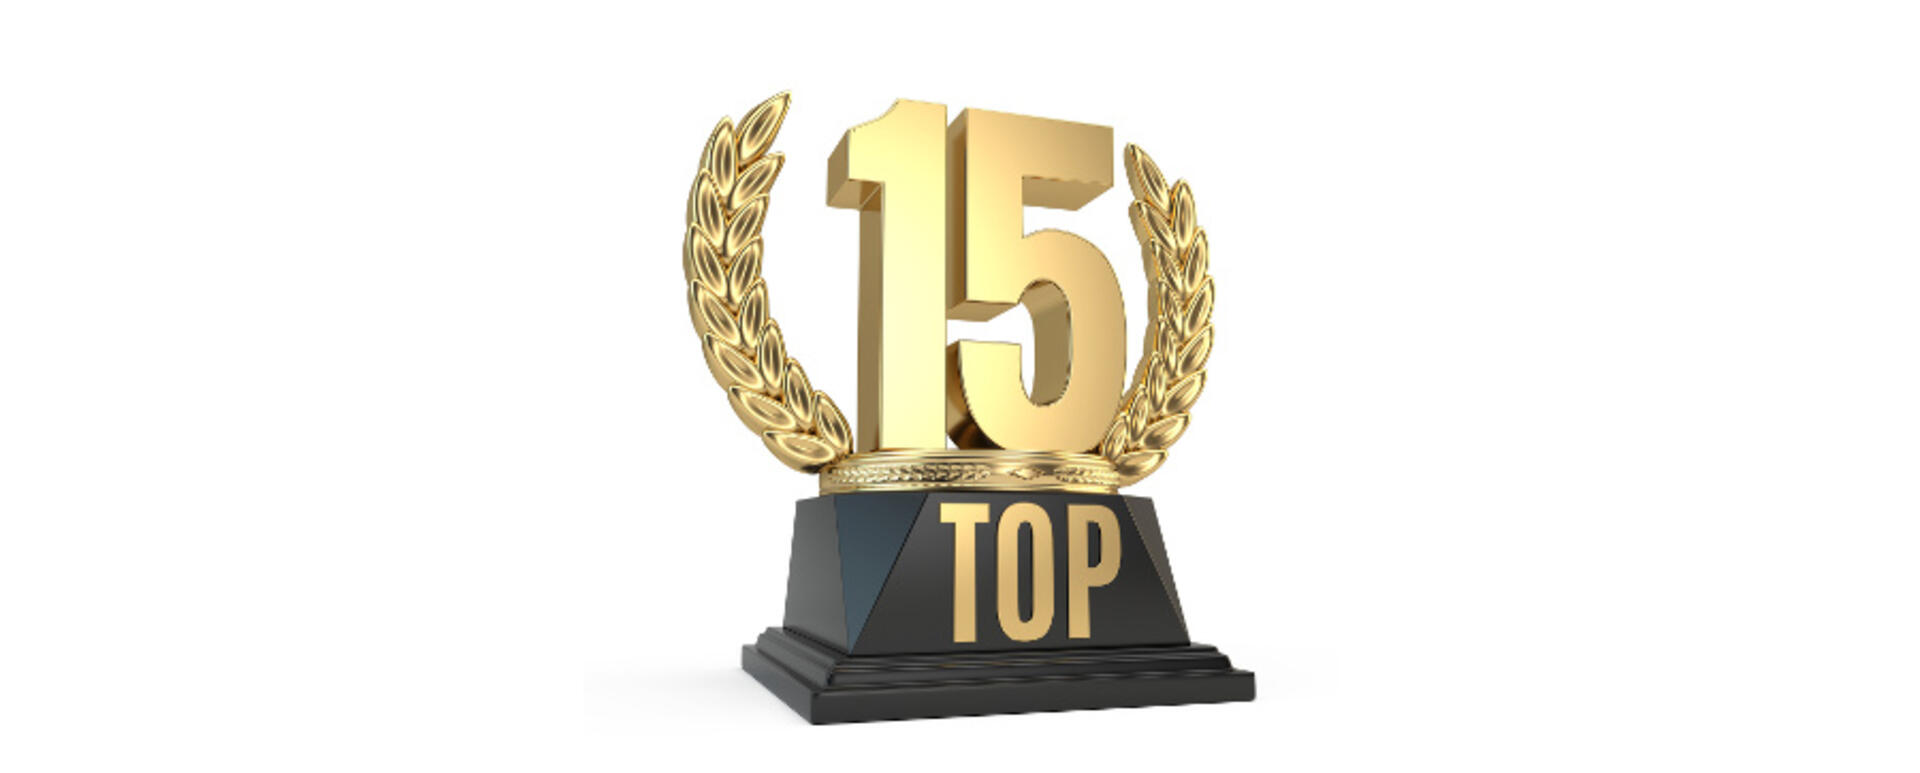 Top 15 drupal companies droptica